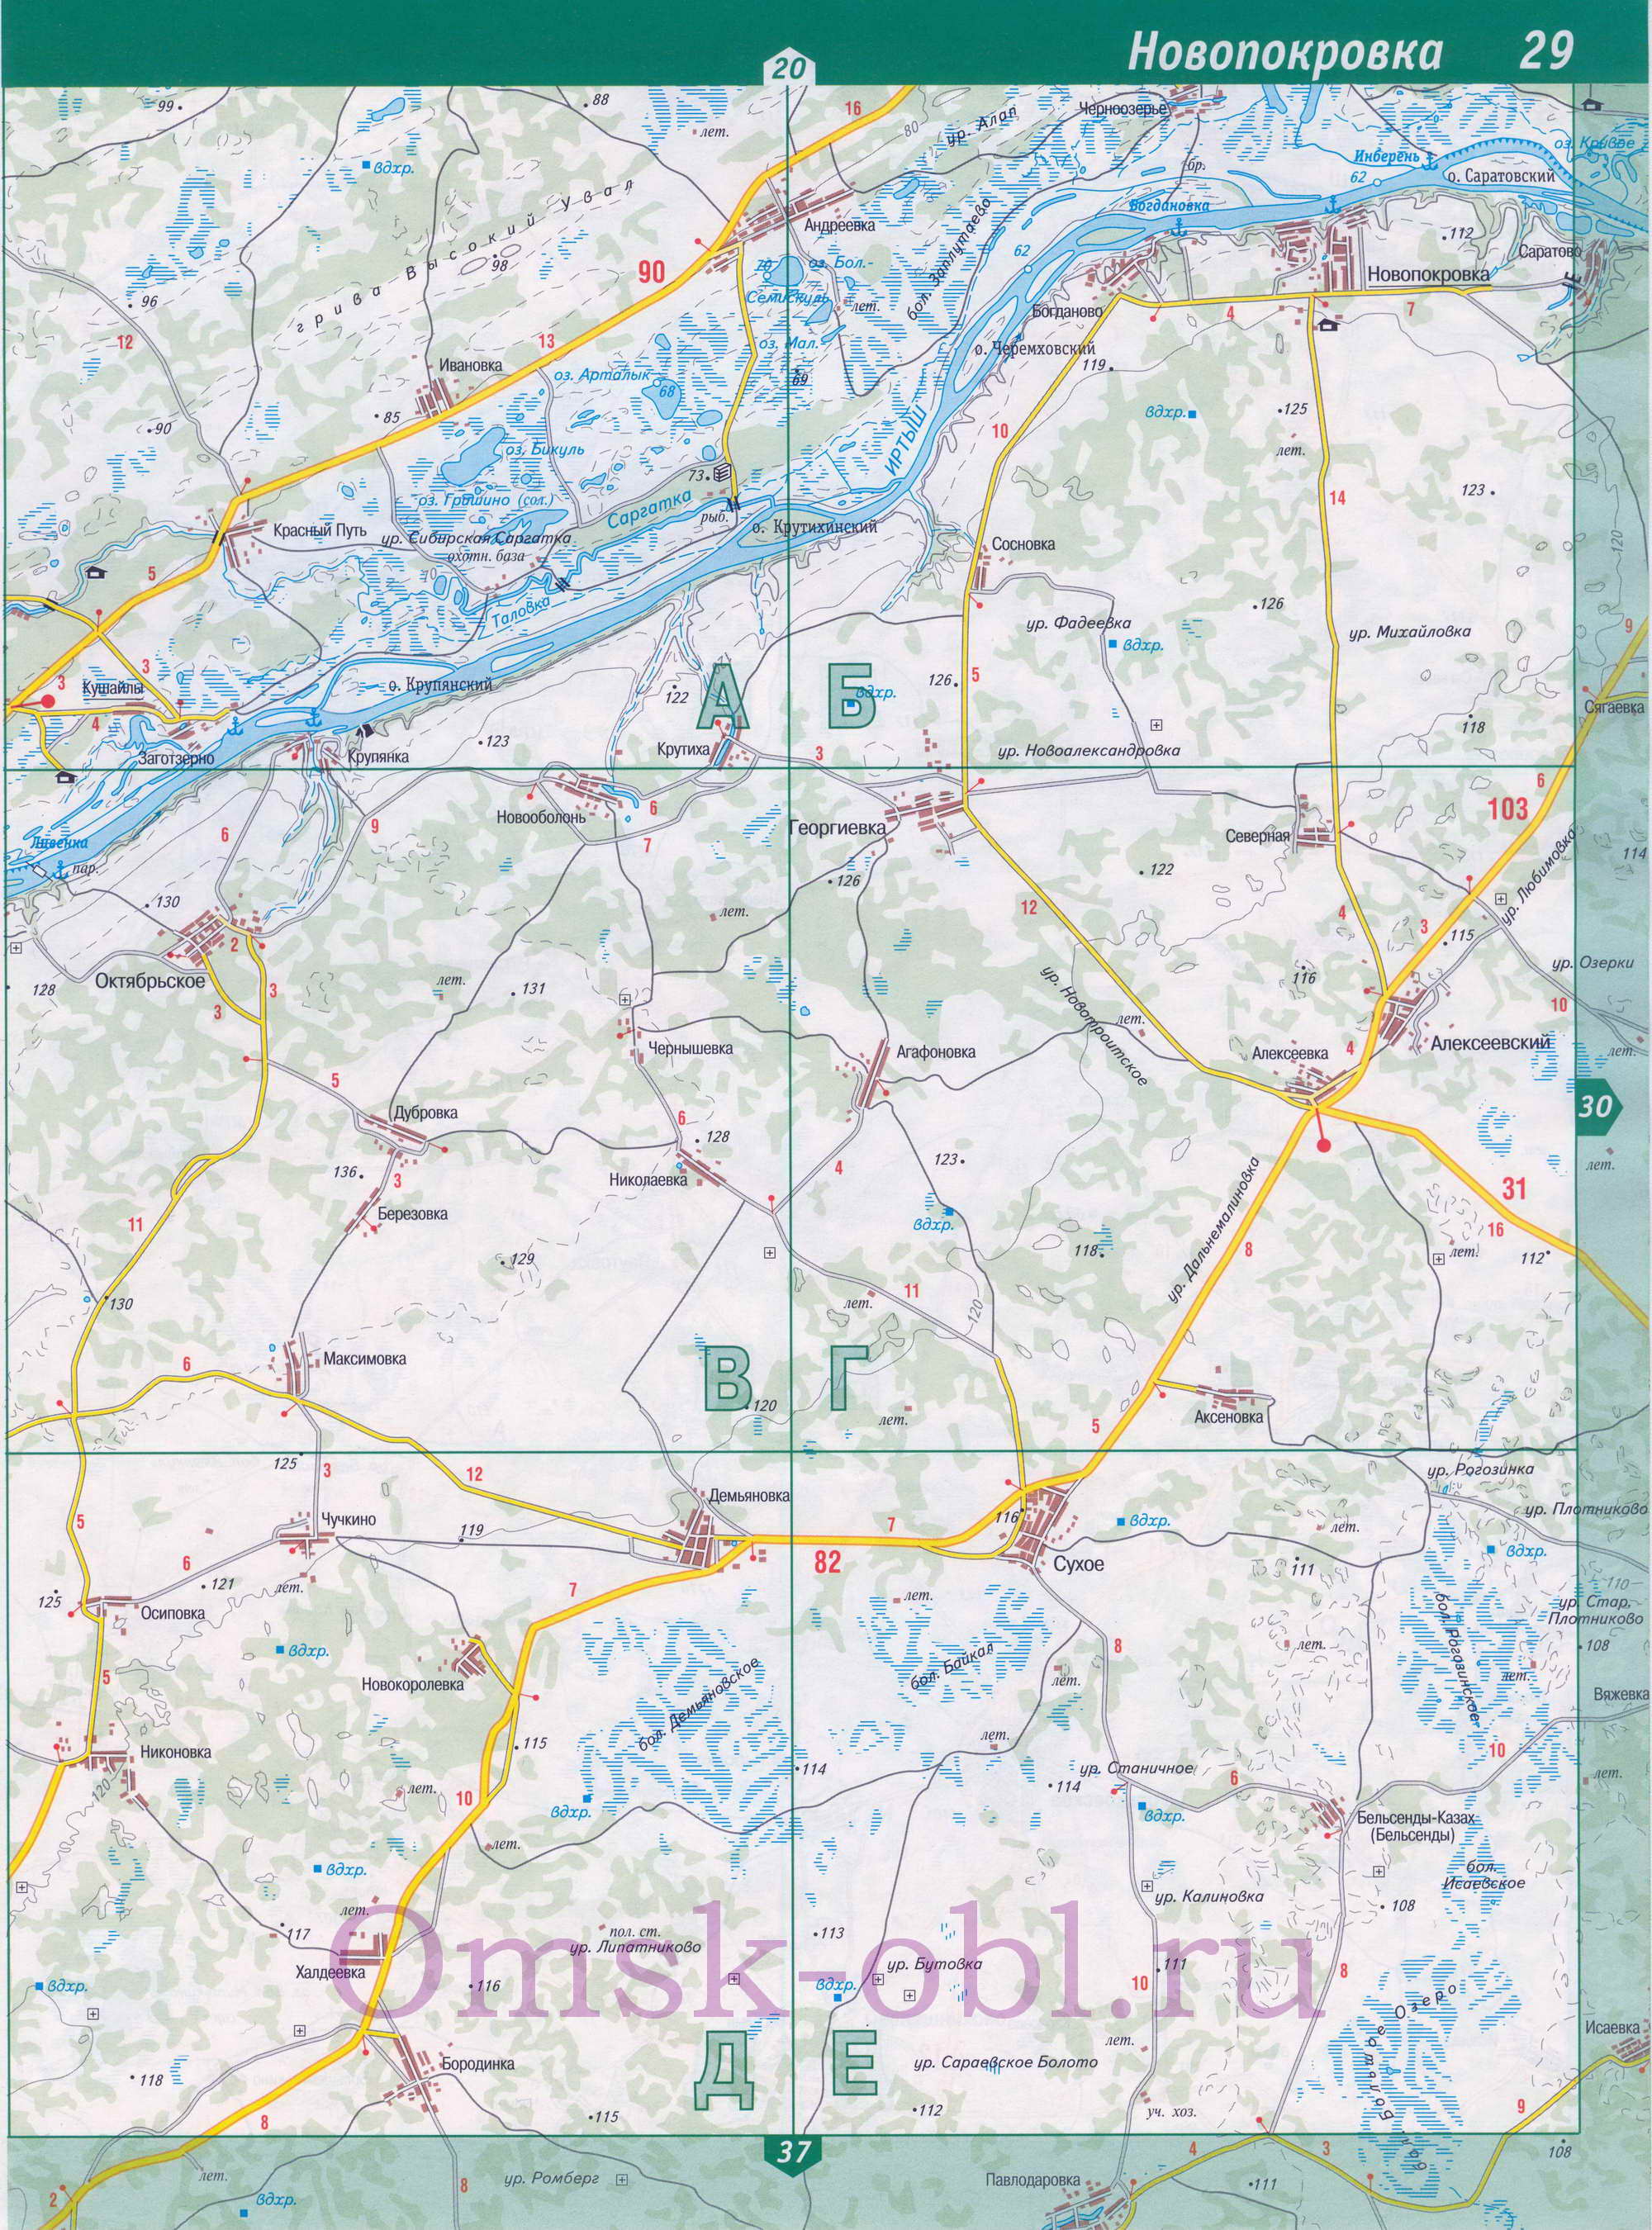 Карта Омской области топографическая. Подробная топографическая карта Омской области, масштаб 1см:2км, E0 - 